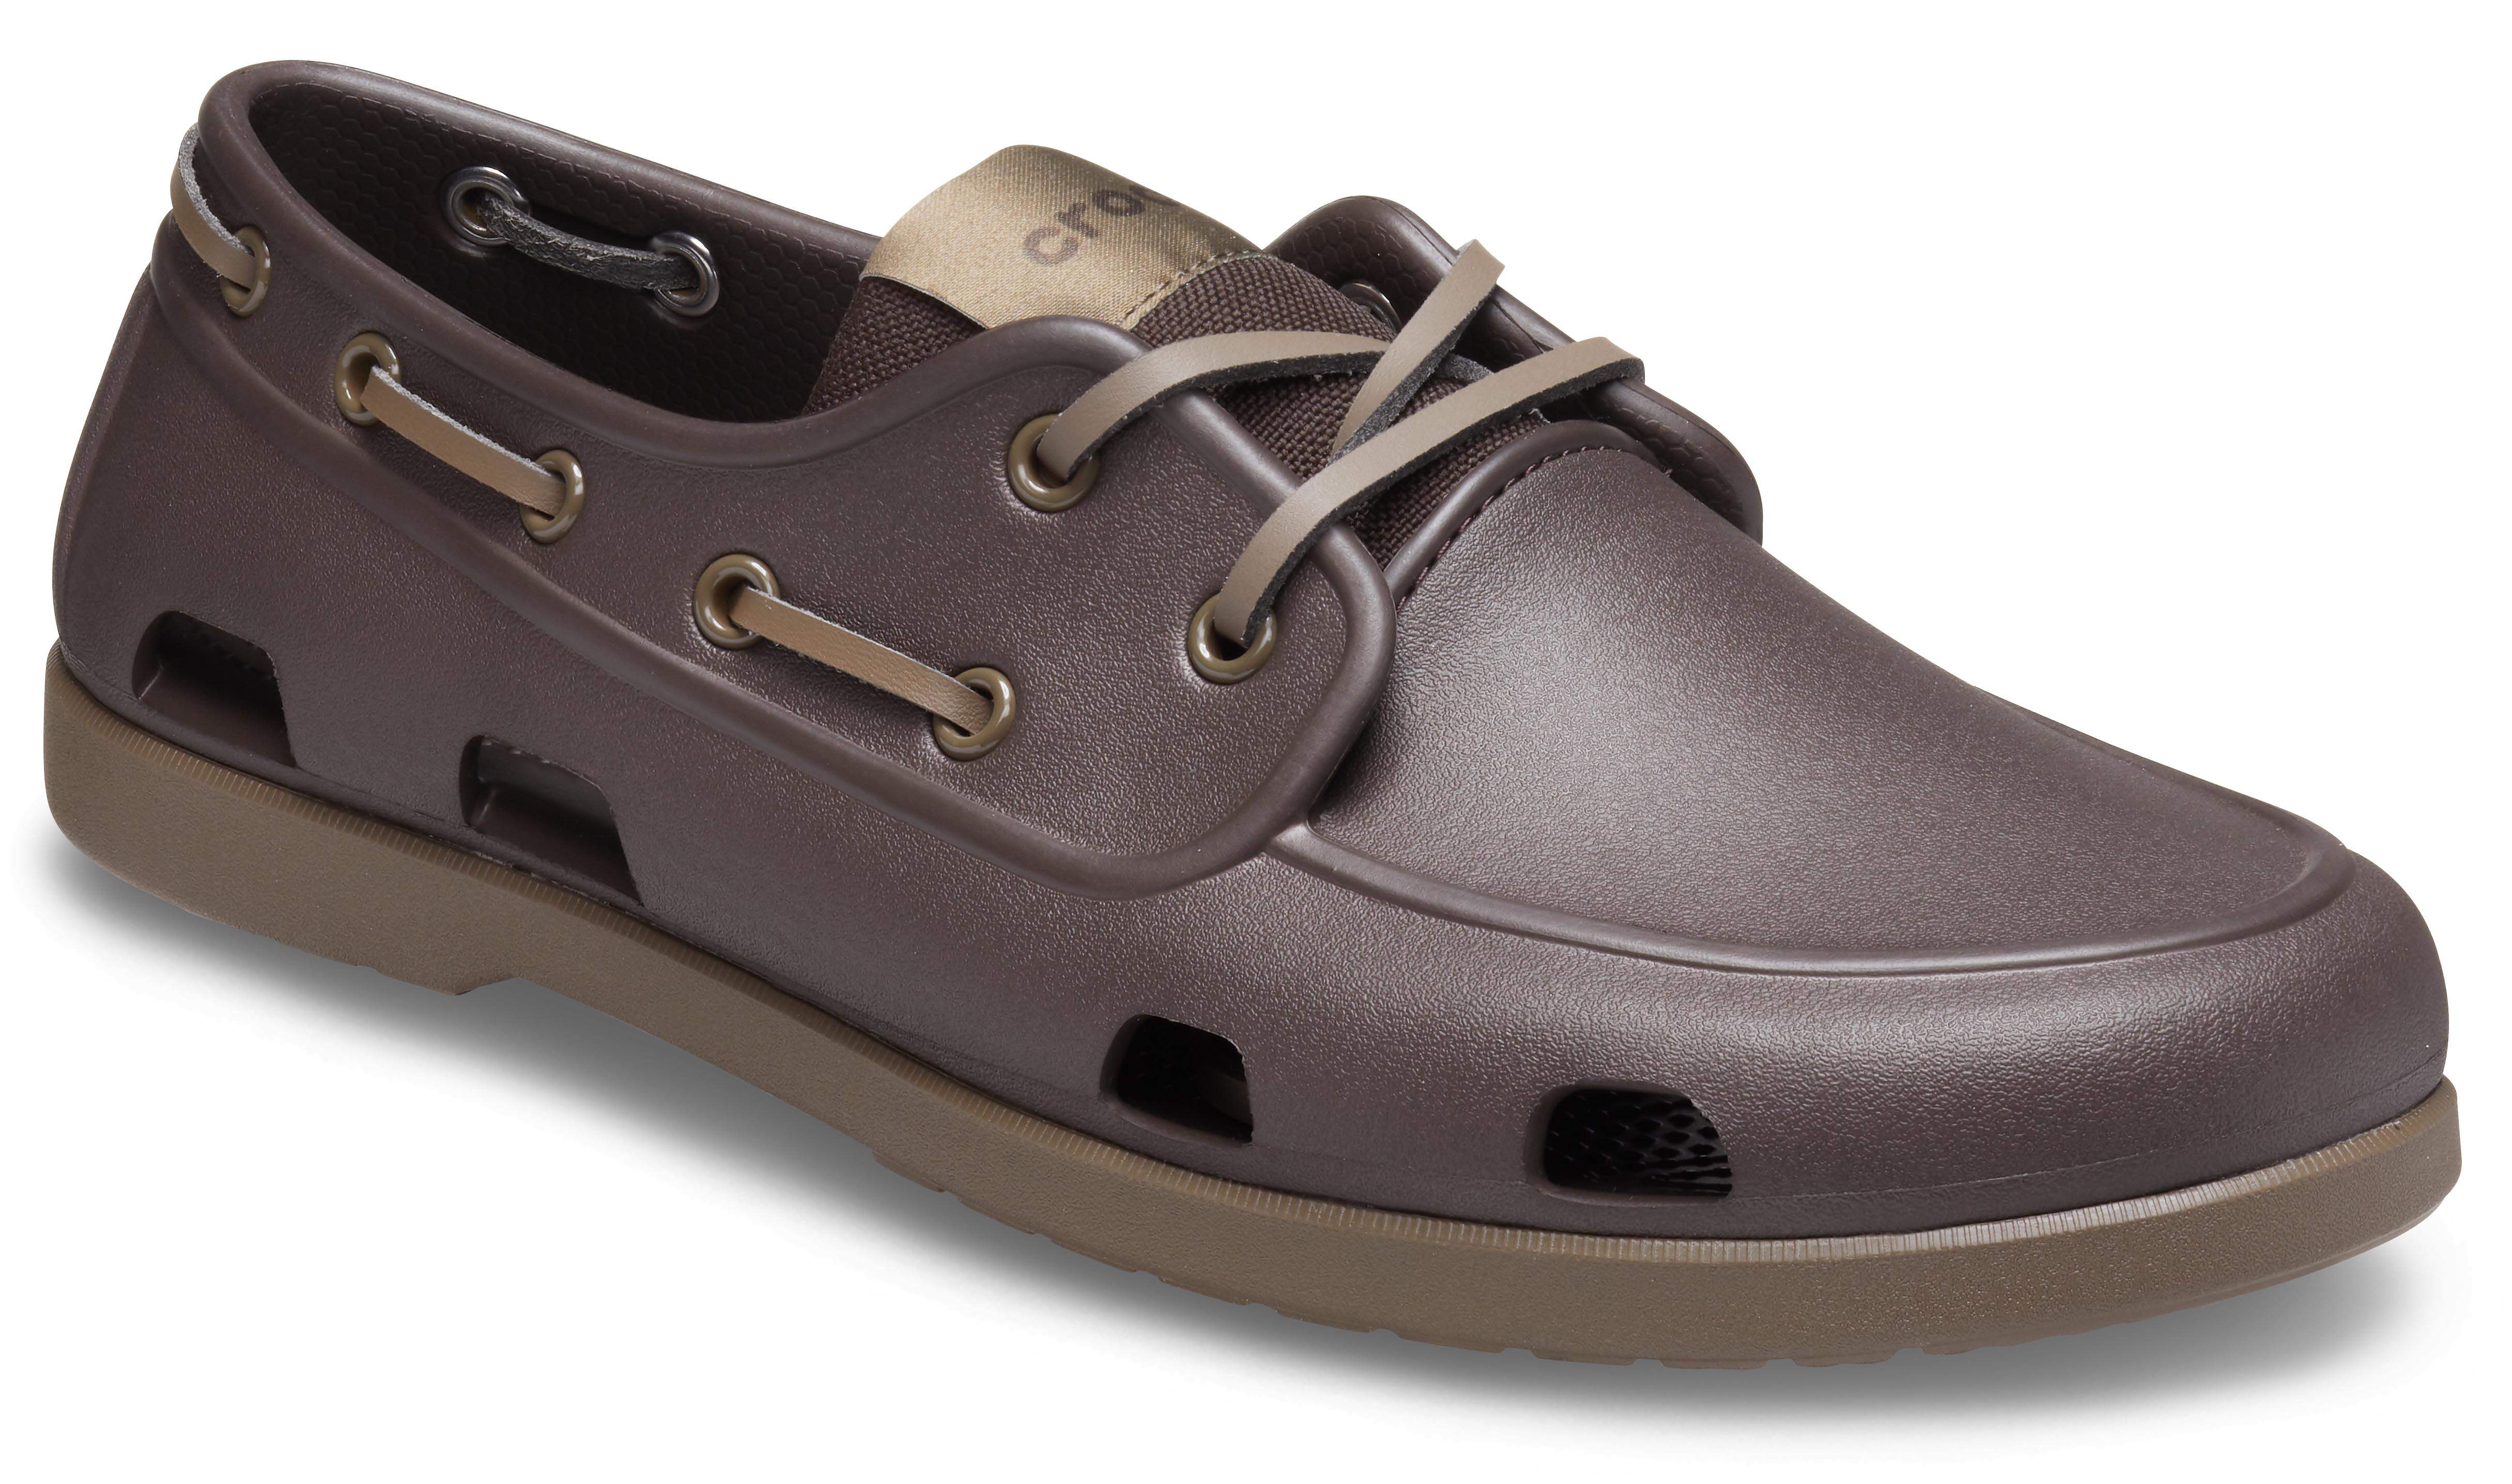 crocs deck shoes